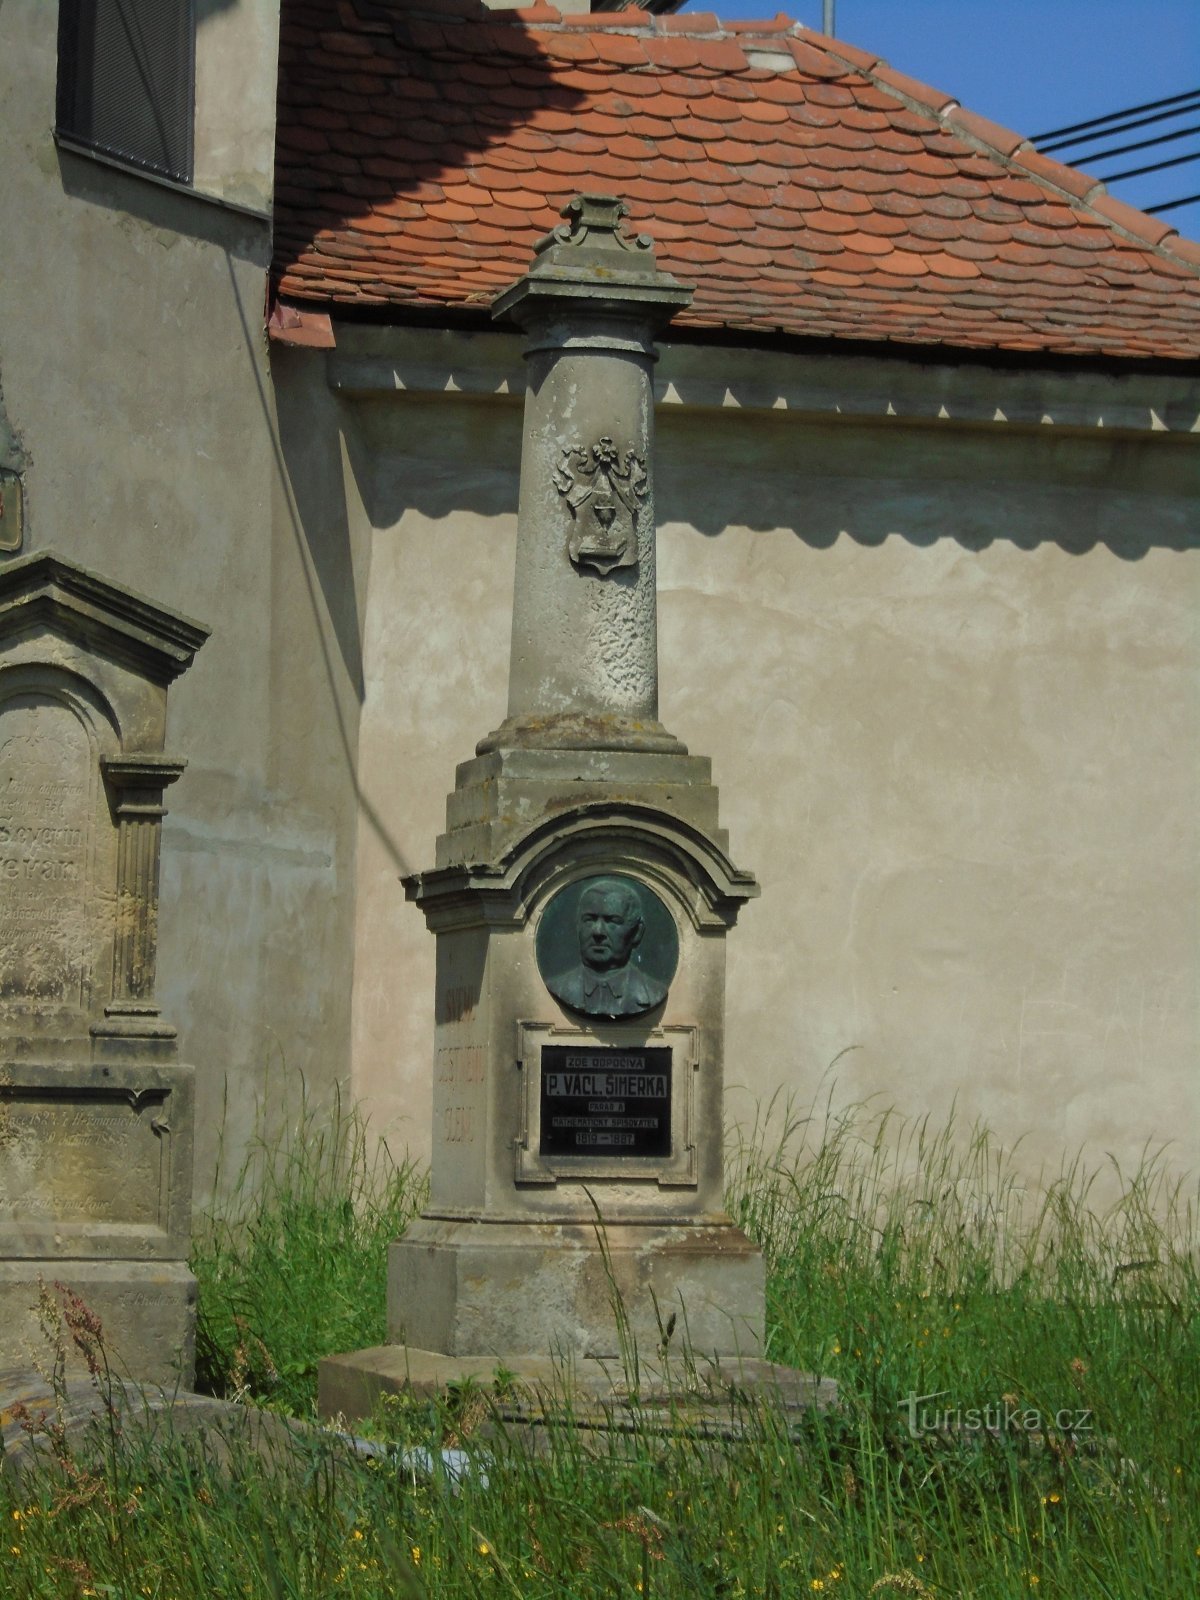 Đài tưởng niệm P. Václav Šimerk (Praskačka)